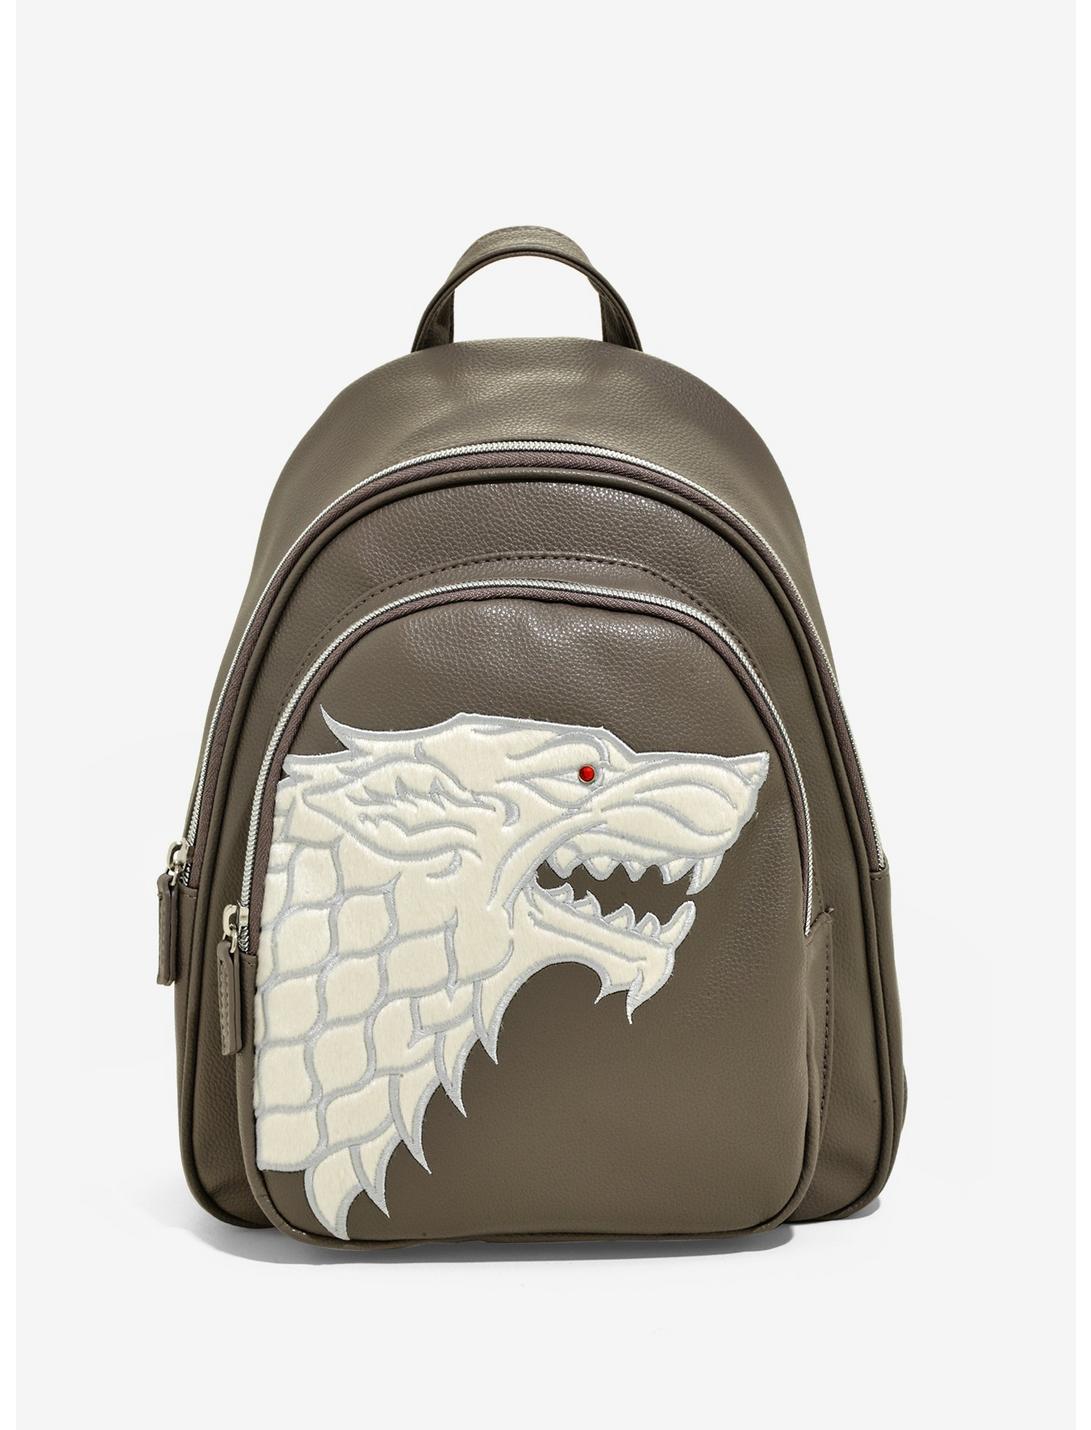 Game of Thrones Stark Inspired Backpack Standard 